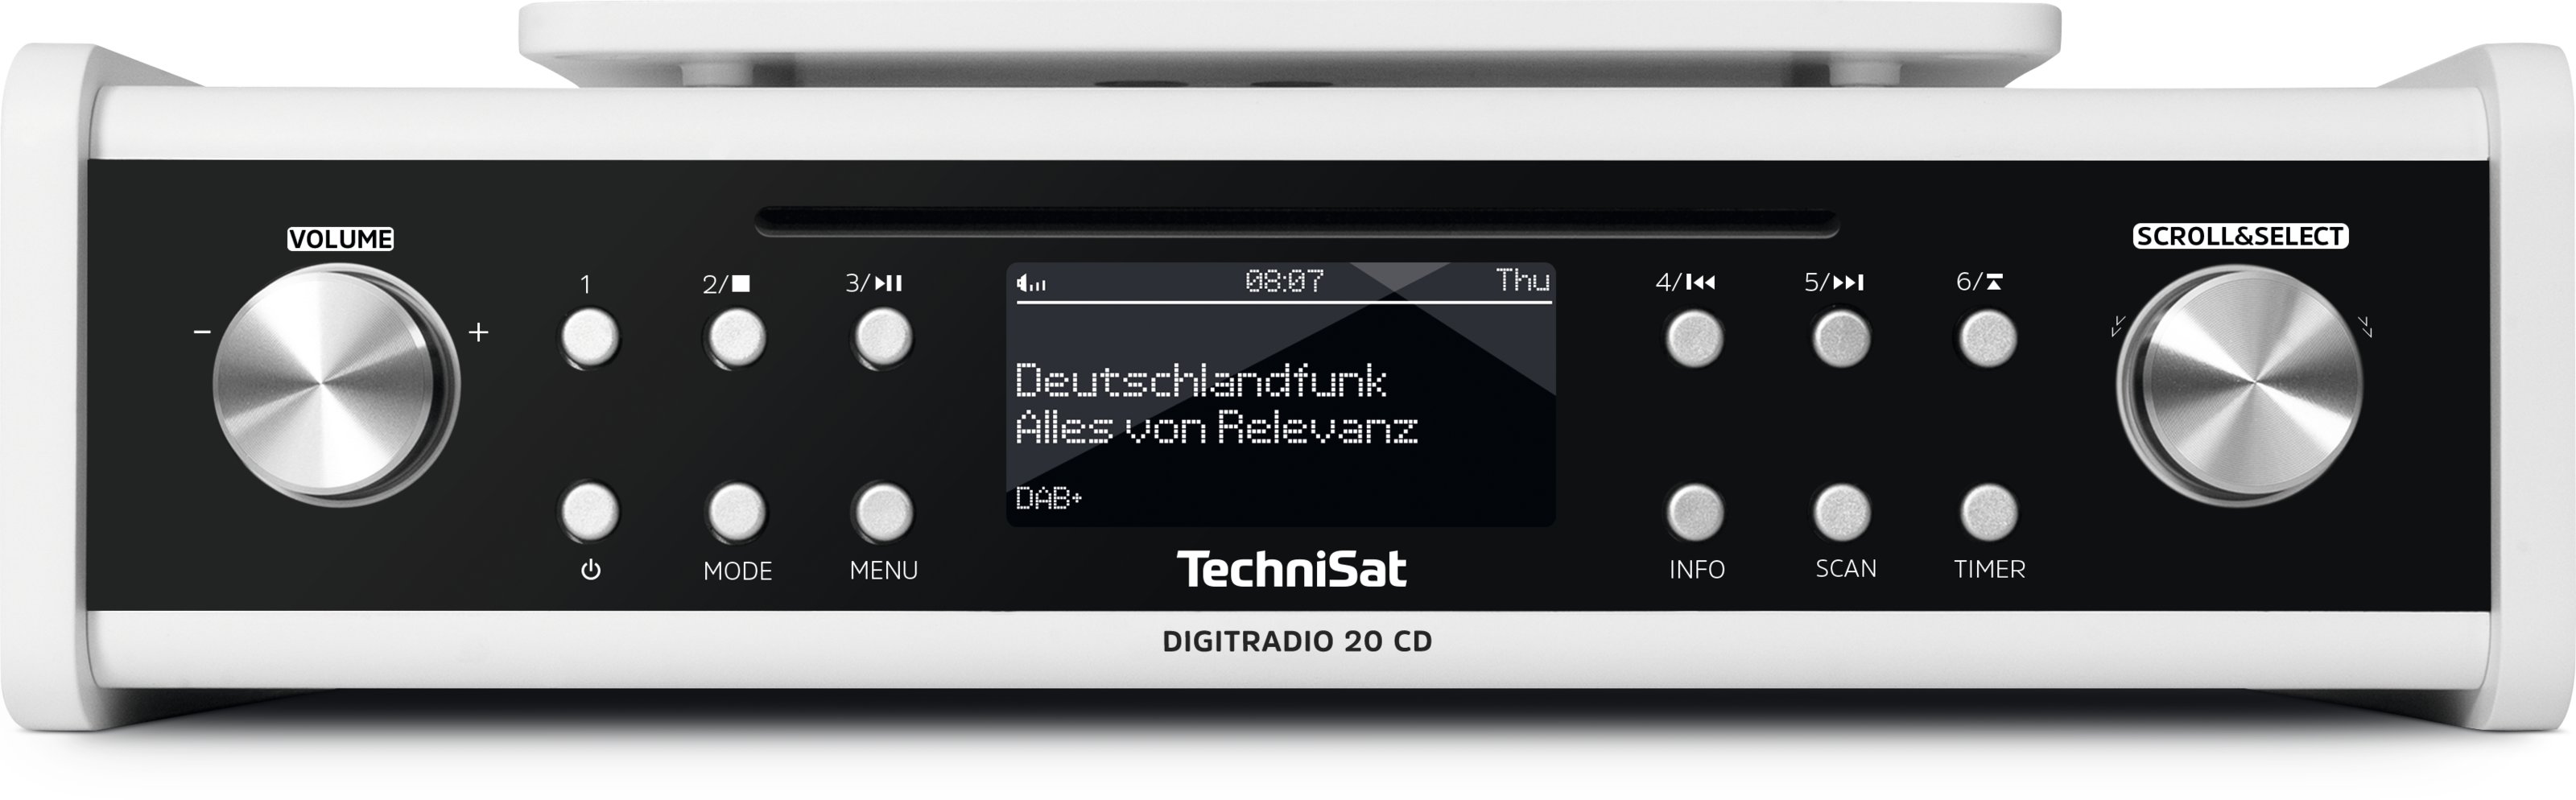 Küchenradio DIGITRADIO-20 CD weiss TechniSat